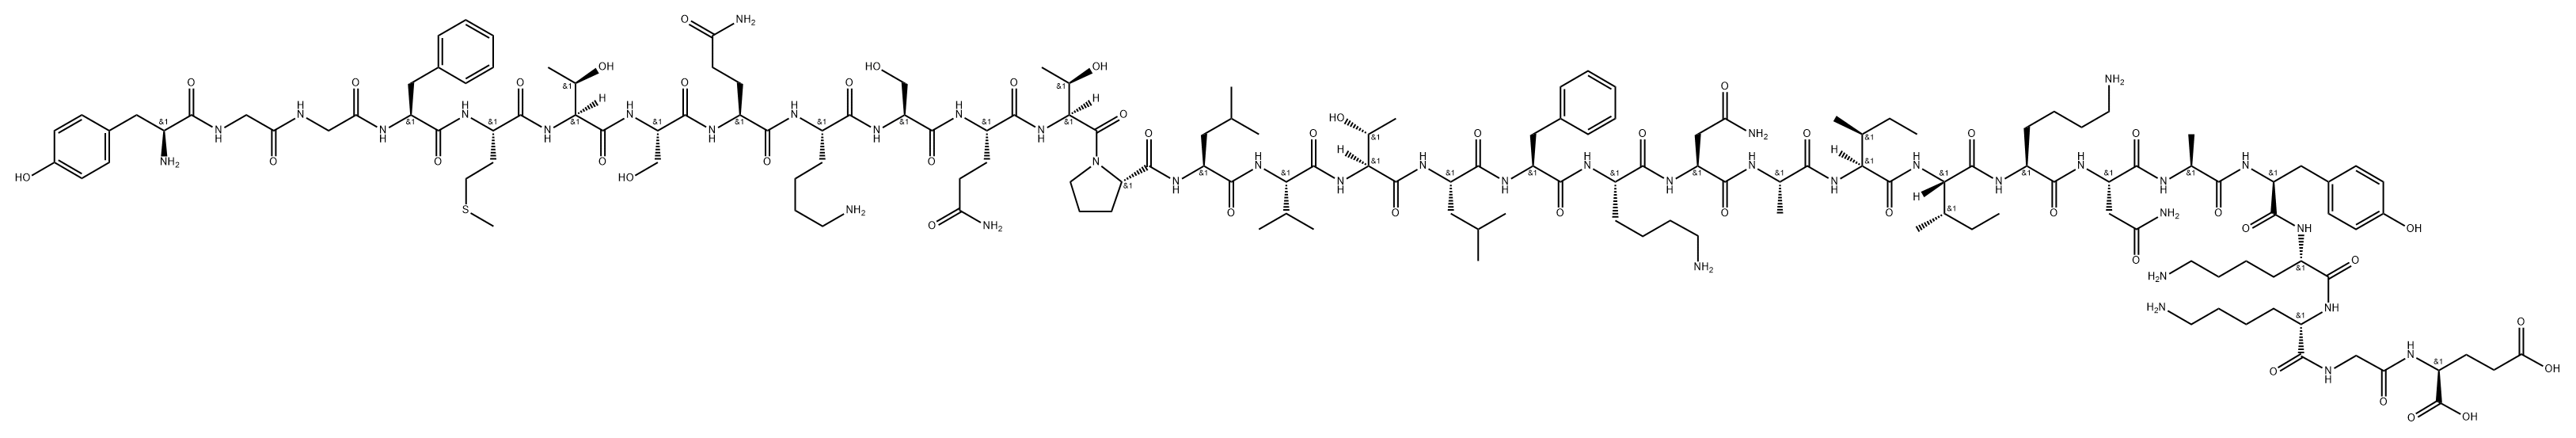 glutamine-8 beta-endorphin Structure